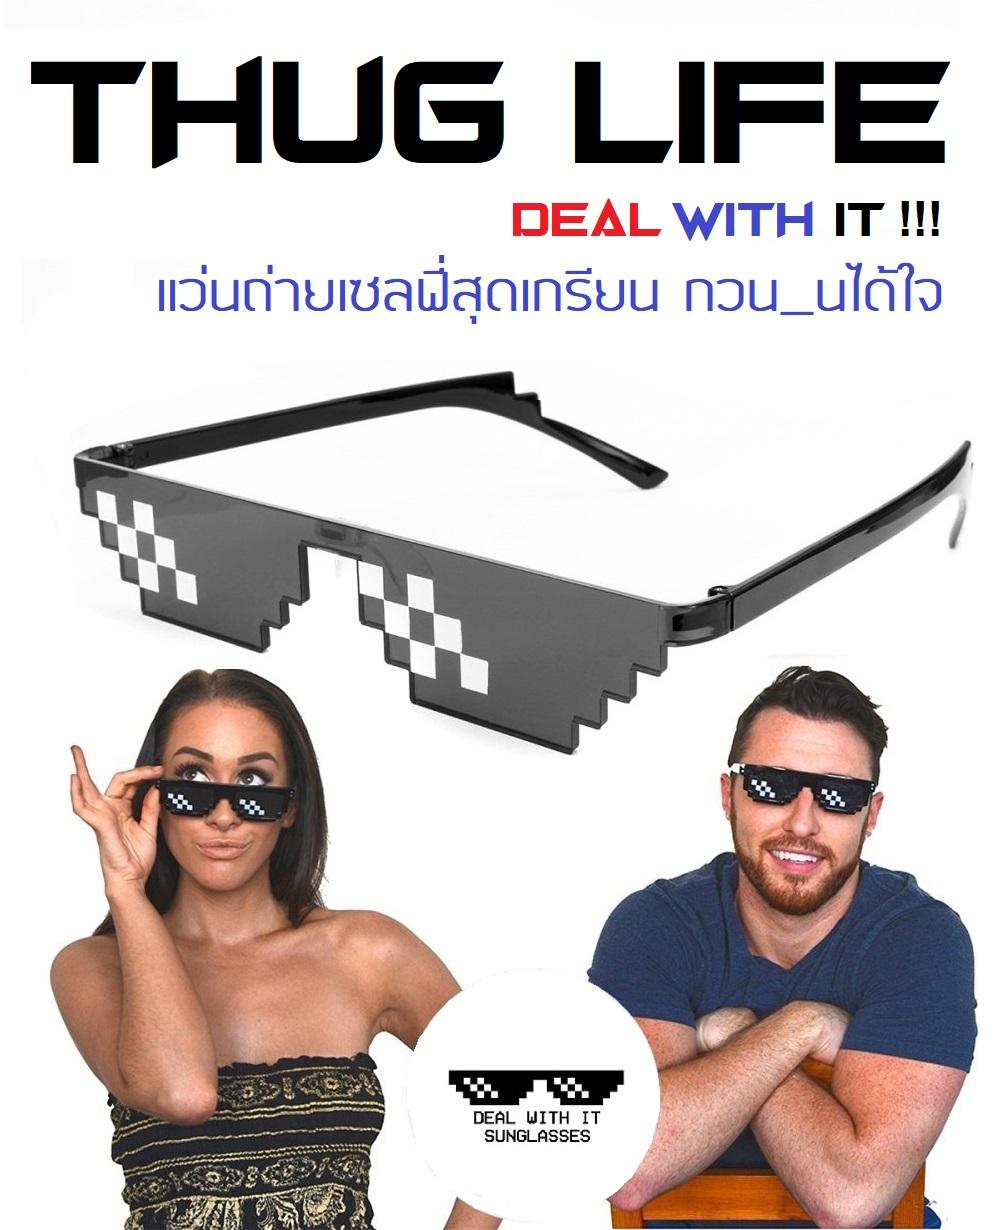 ภาพประกอบของ แว่นกันแดด แว่น the pixel  original เอาไว้ถ่ายเซลฟี่กับเพื่อน เกรียนสุดๆ  สินค้าอยุ่ในไทยจัดส่งไวมาก